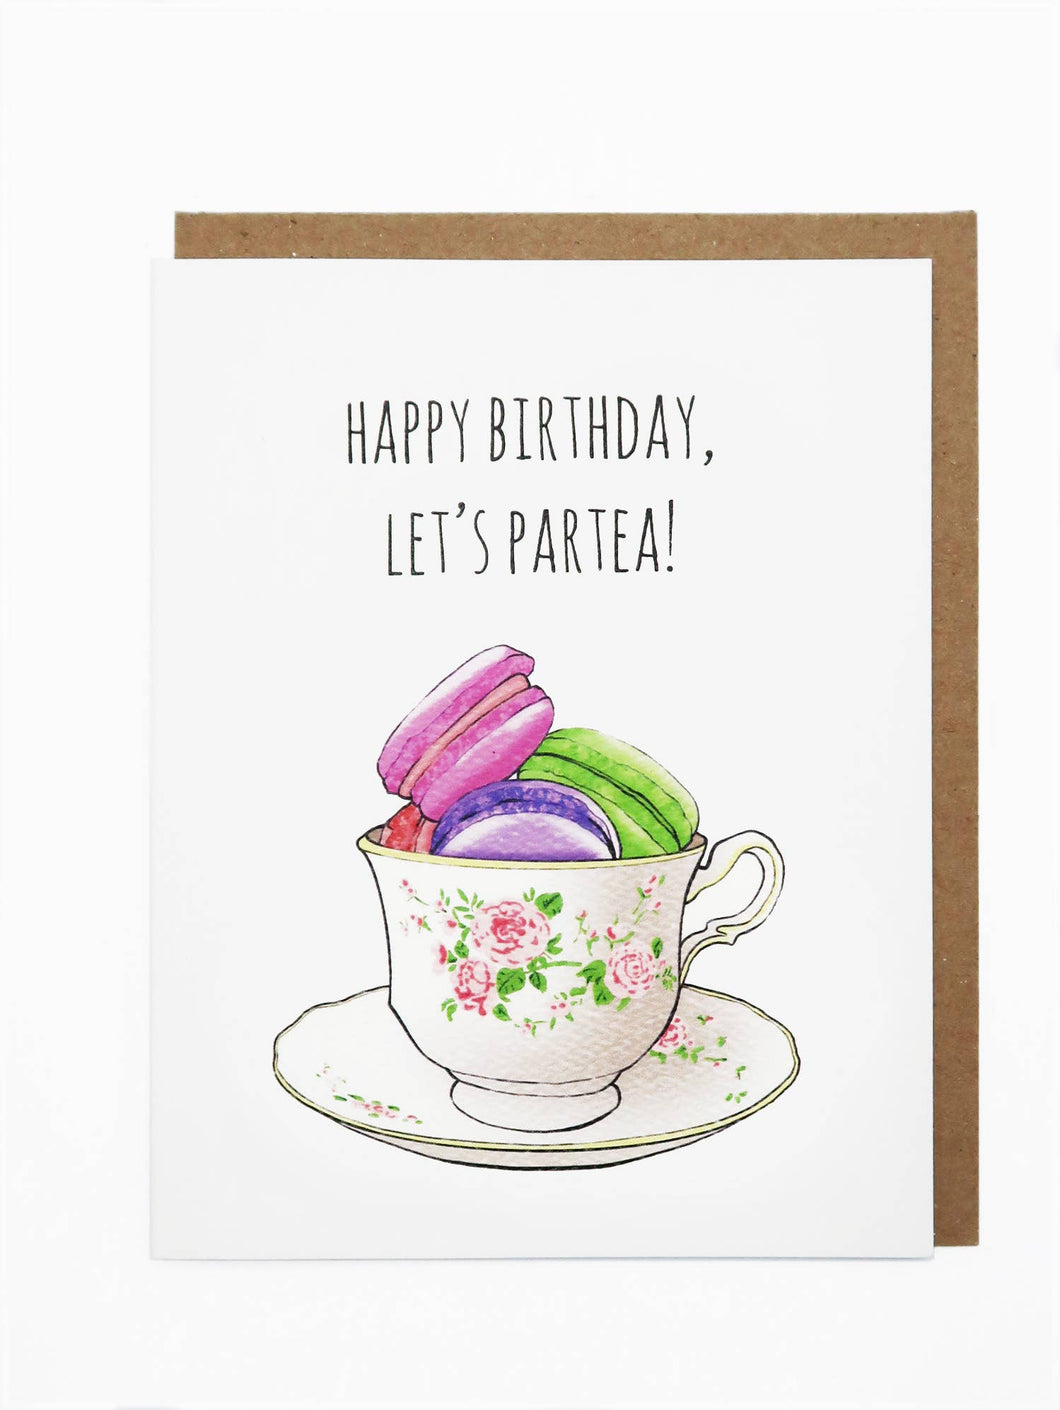 Let's Partea Birthday